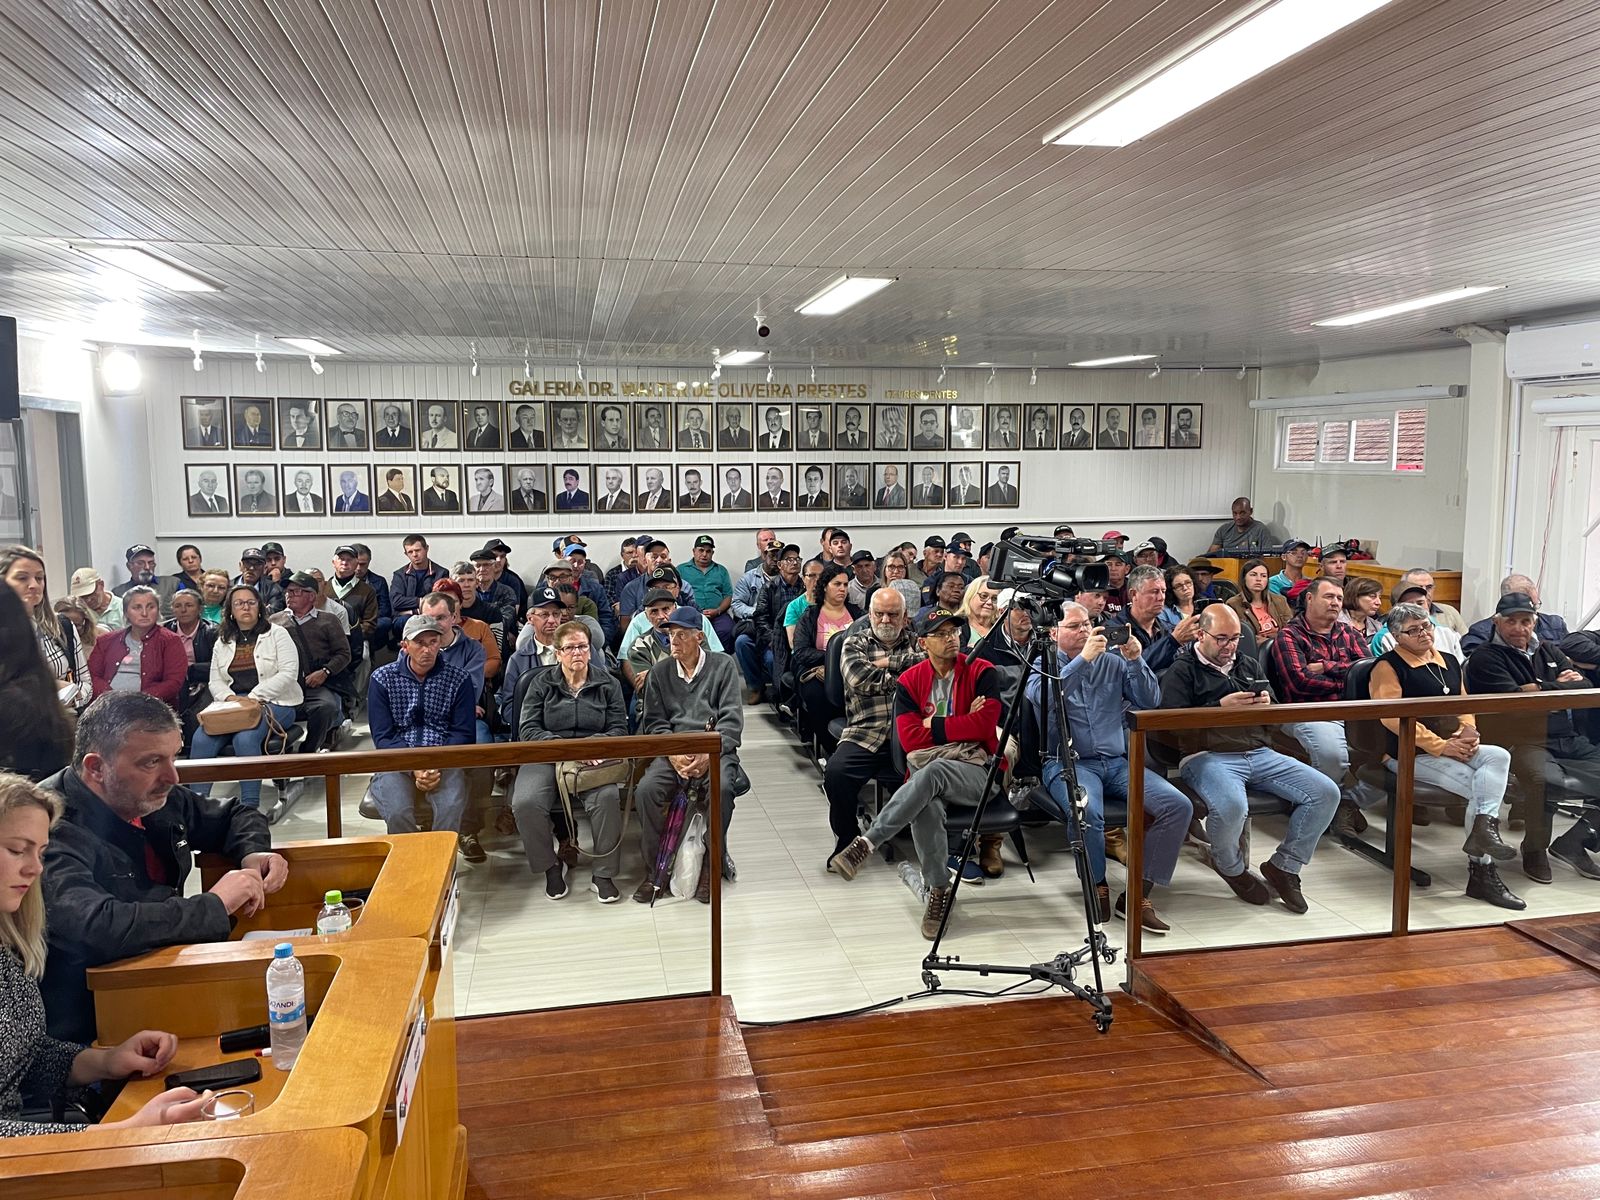 Câmara realiza audiência pública para tratar sobre distribuição de energia elétrica no município - Câmara de vereadores de Canguçu